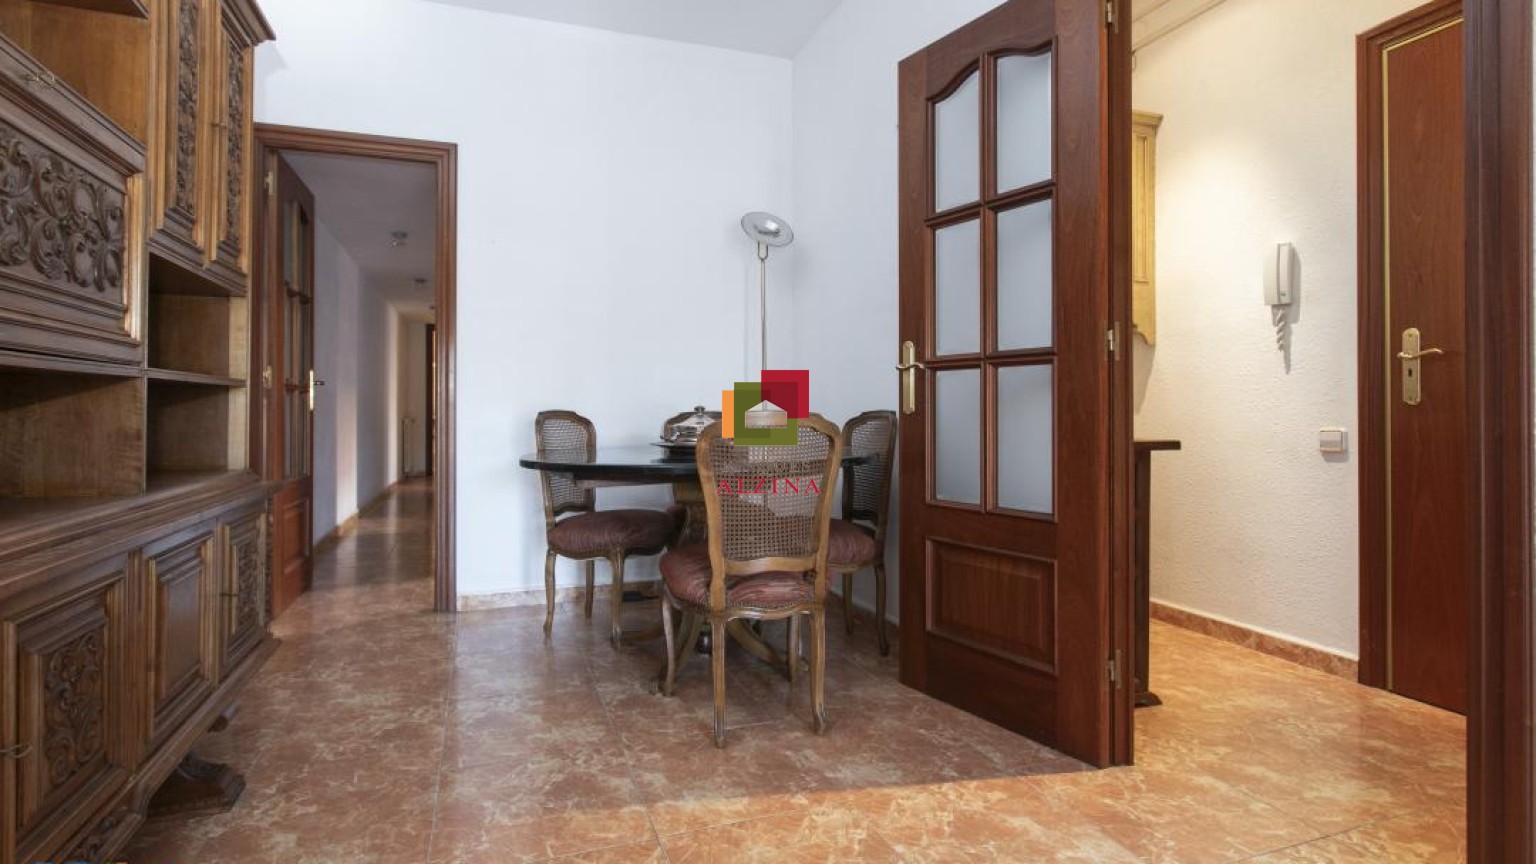 "Fantàstic pis en venda a Esplugues, situat en l'exclusiva zona del Gall"